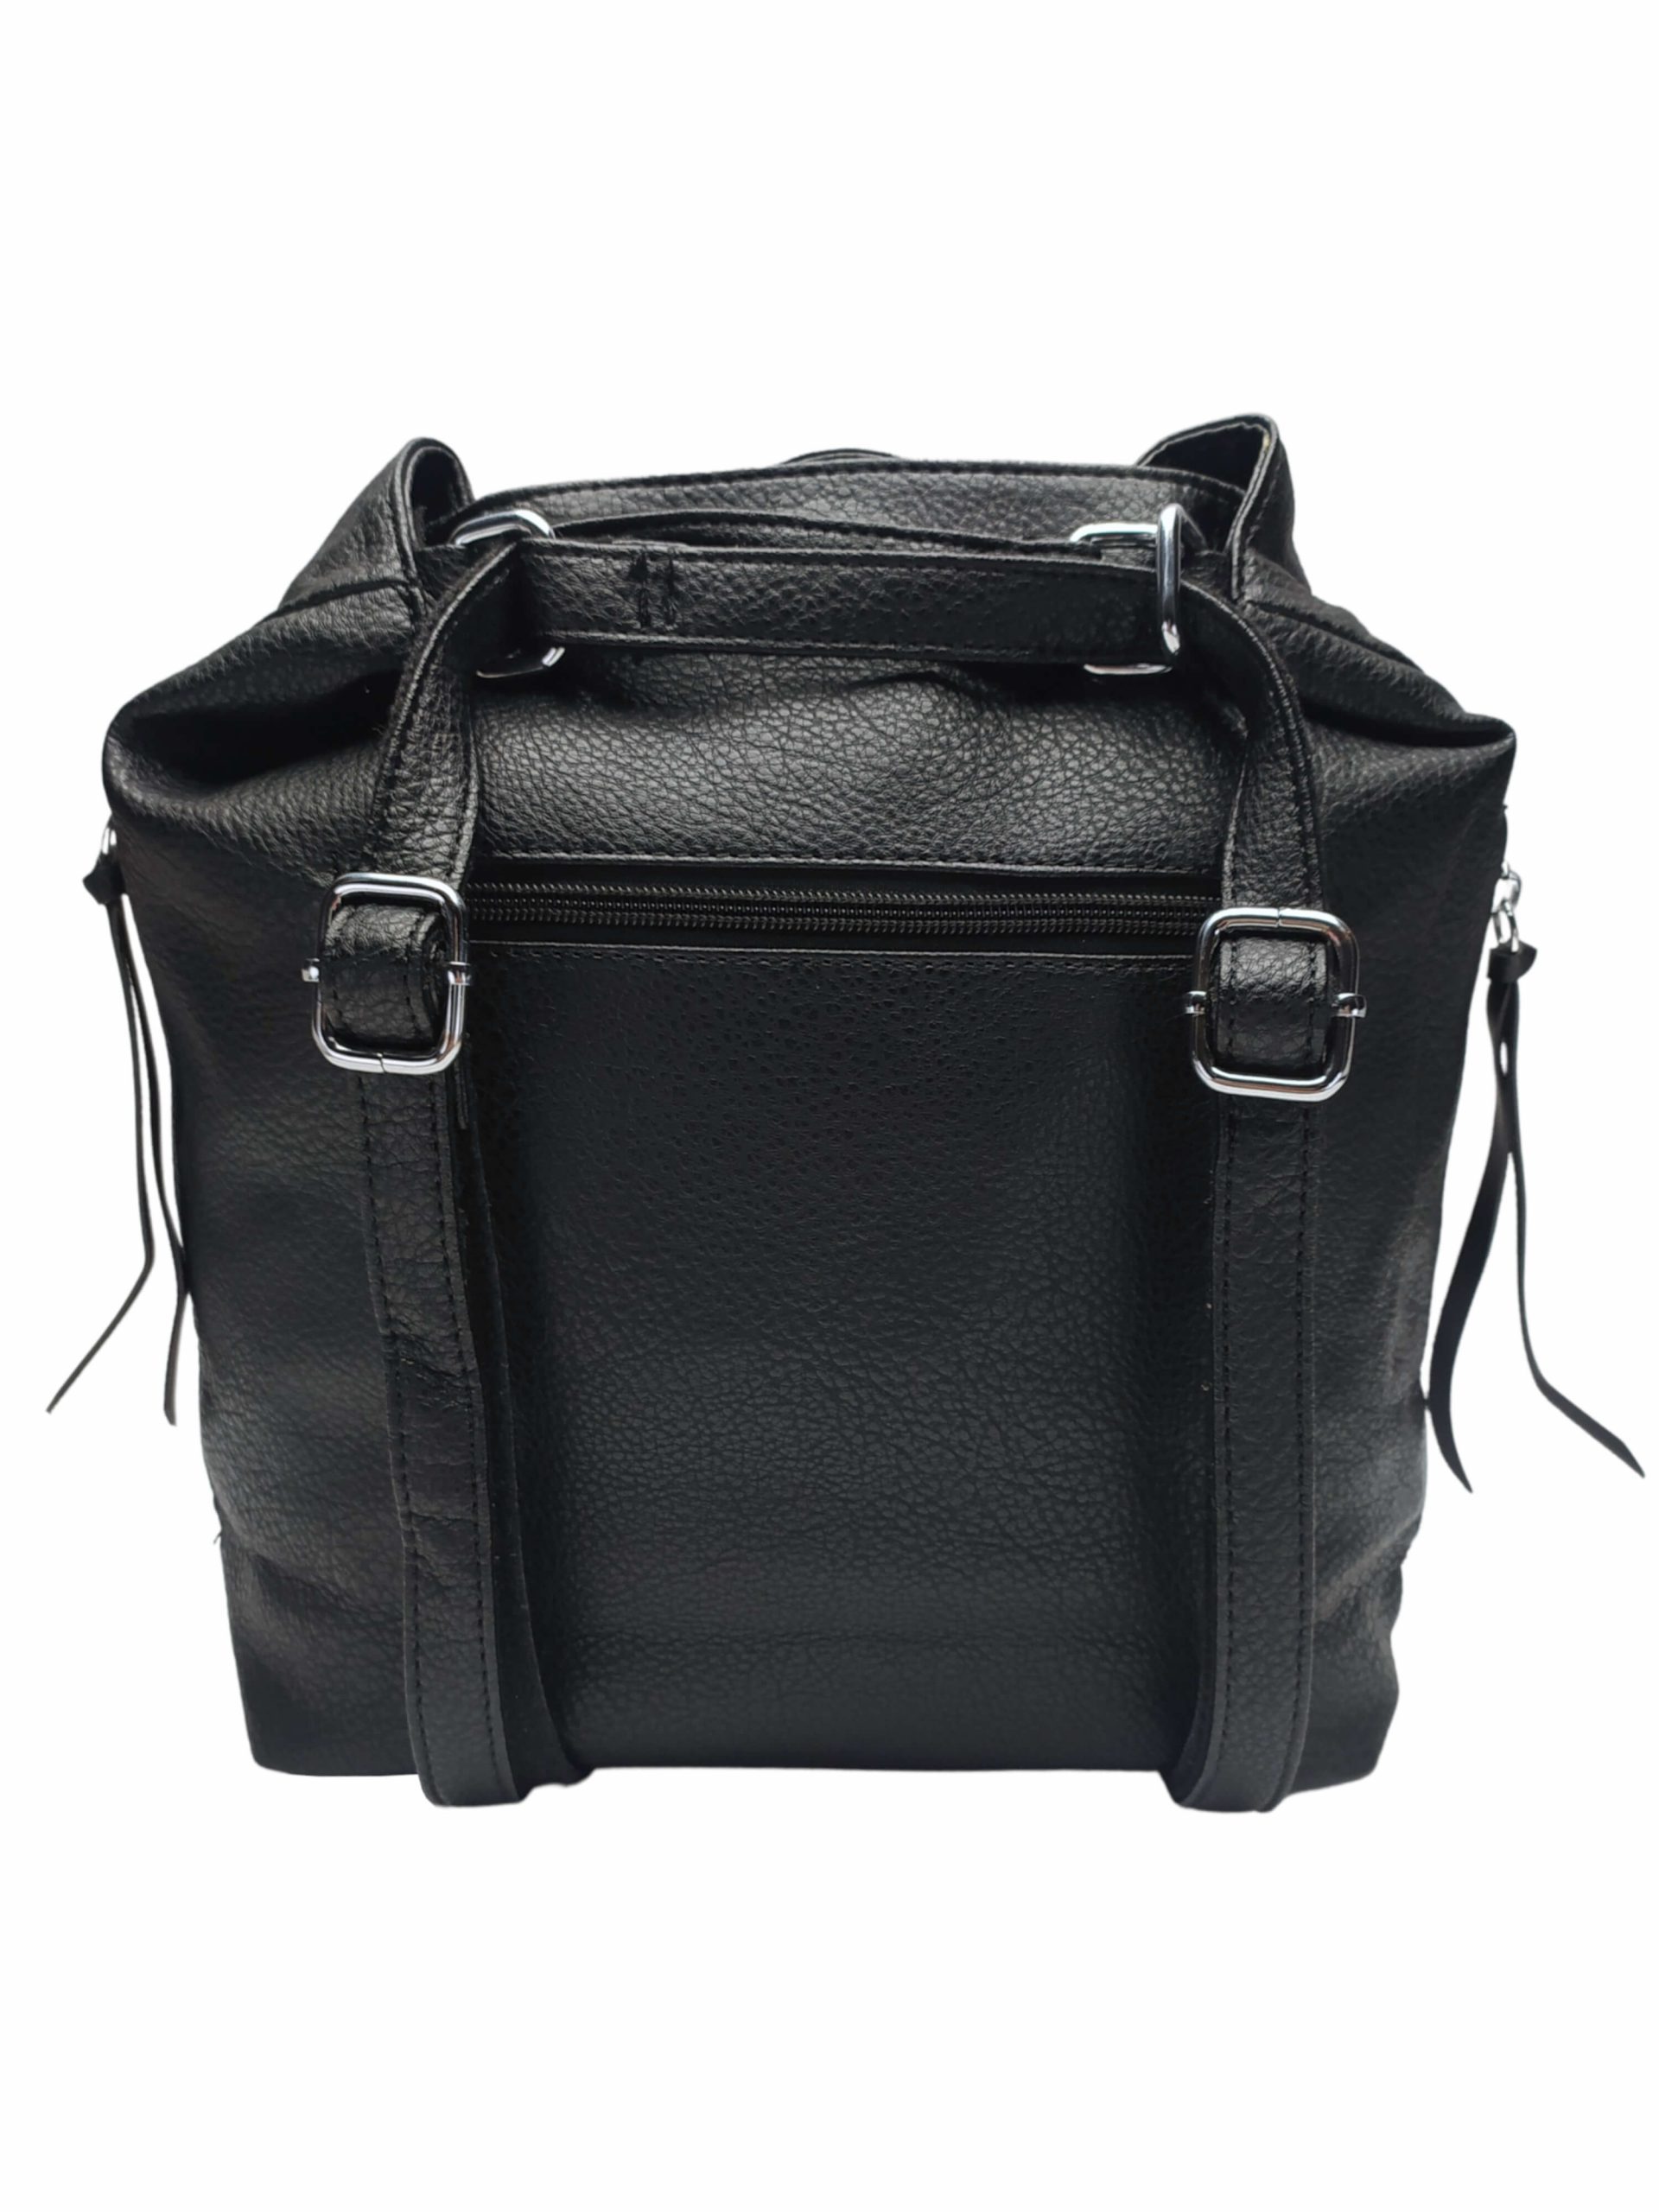 Střední černý kabelko-batoh 2v1 s praktickými bočními kapsami, Miss Moda, 980882, zadní strana kabelko-batohu 2v1 s popruhy